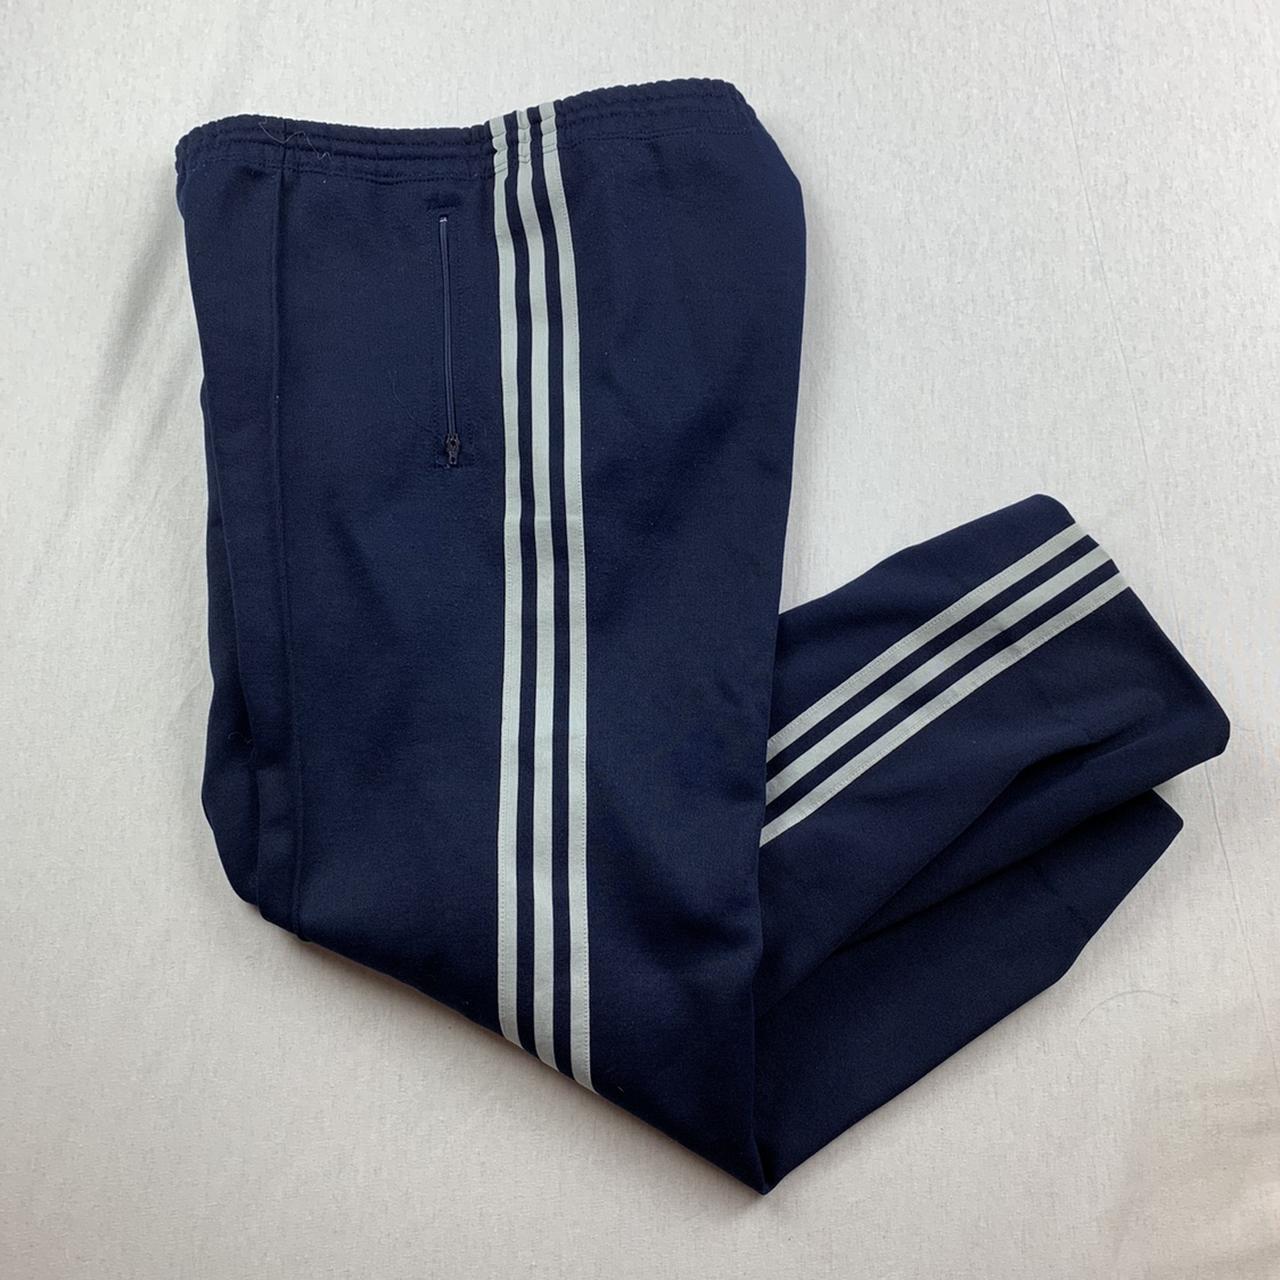 Vintage 90s Adidas Sweatpants Track Pants Navy Grey - Depop